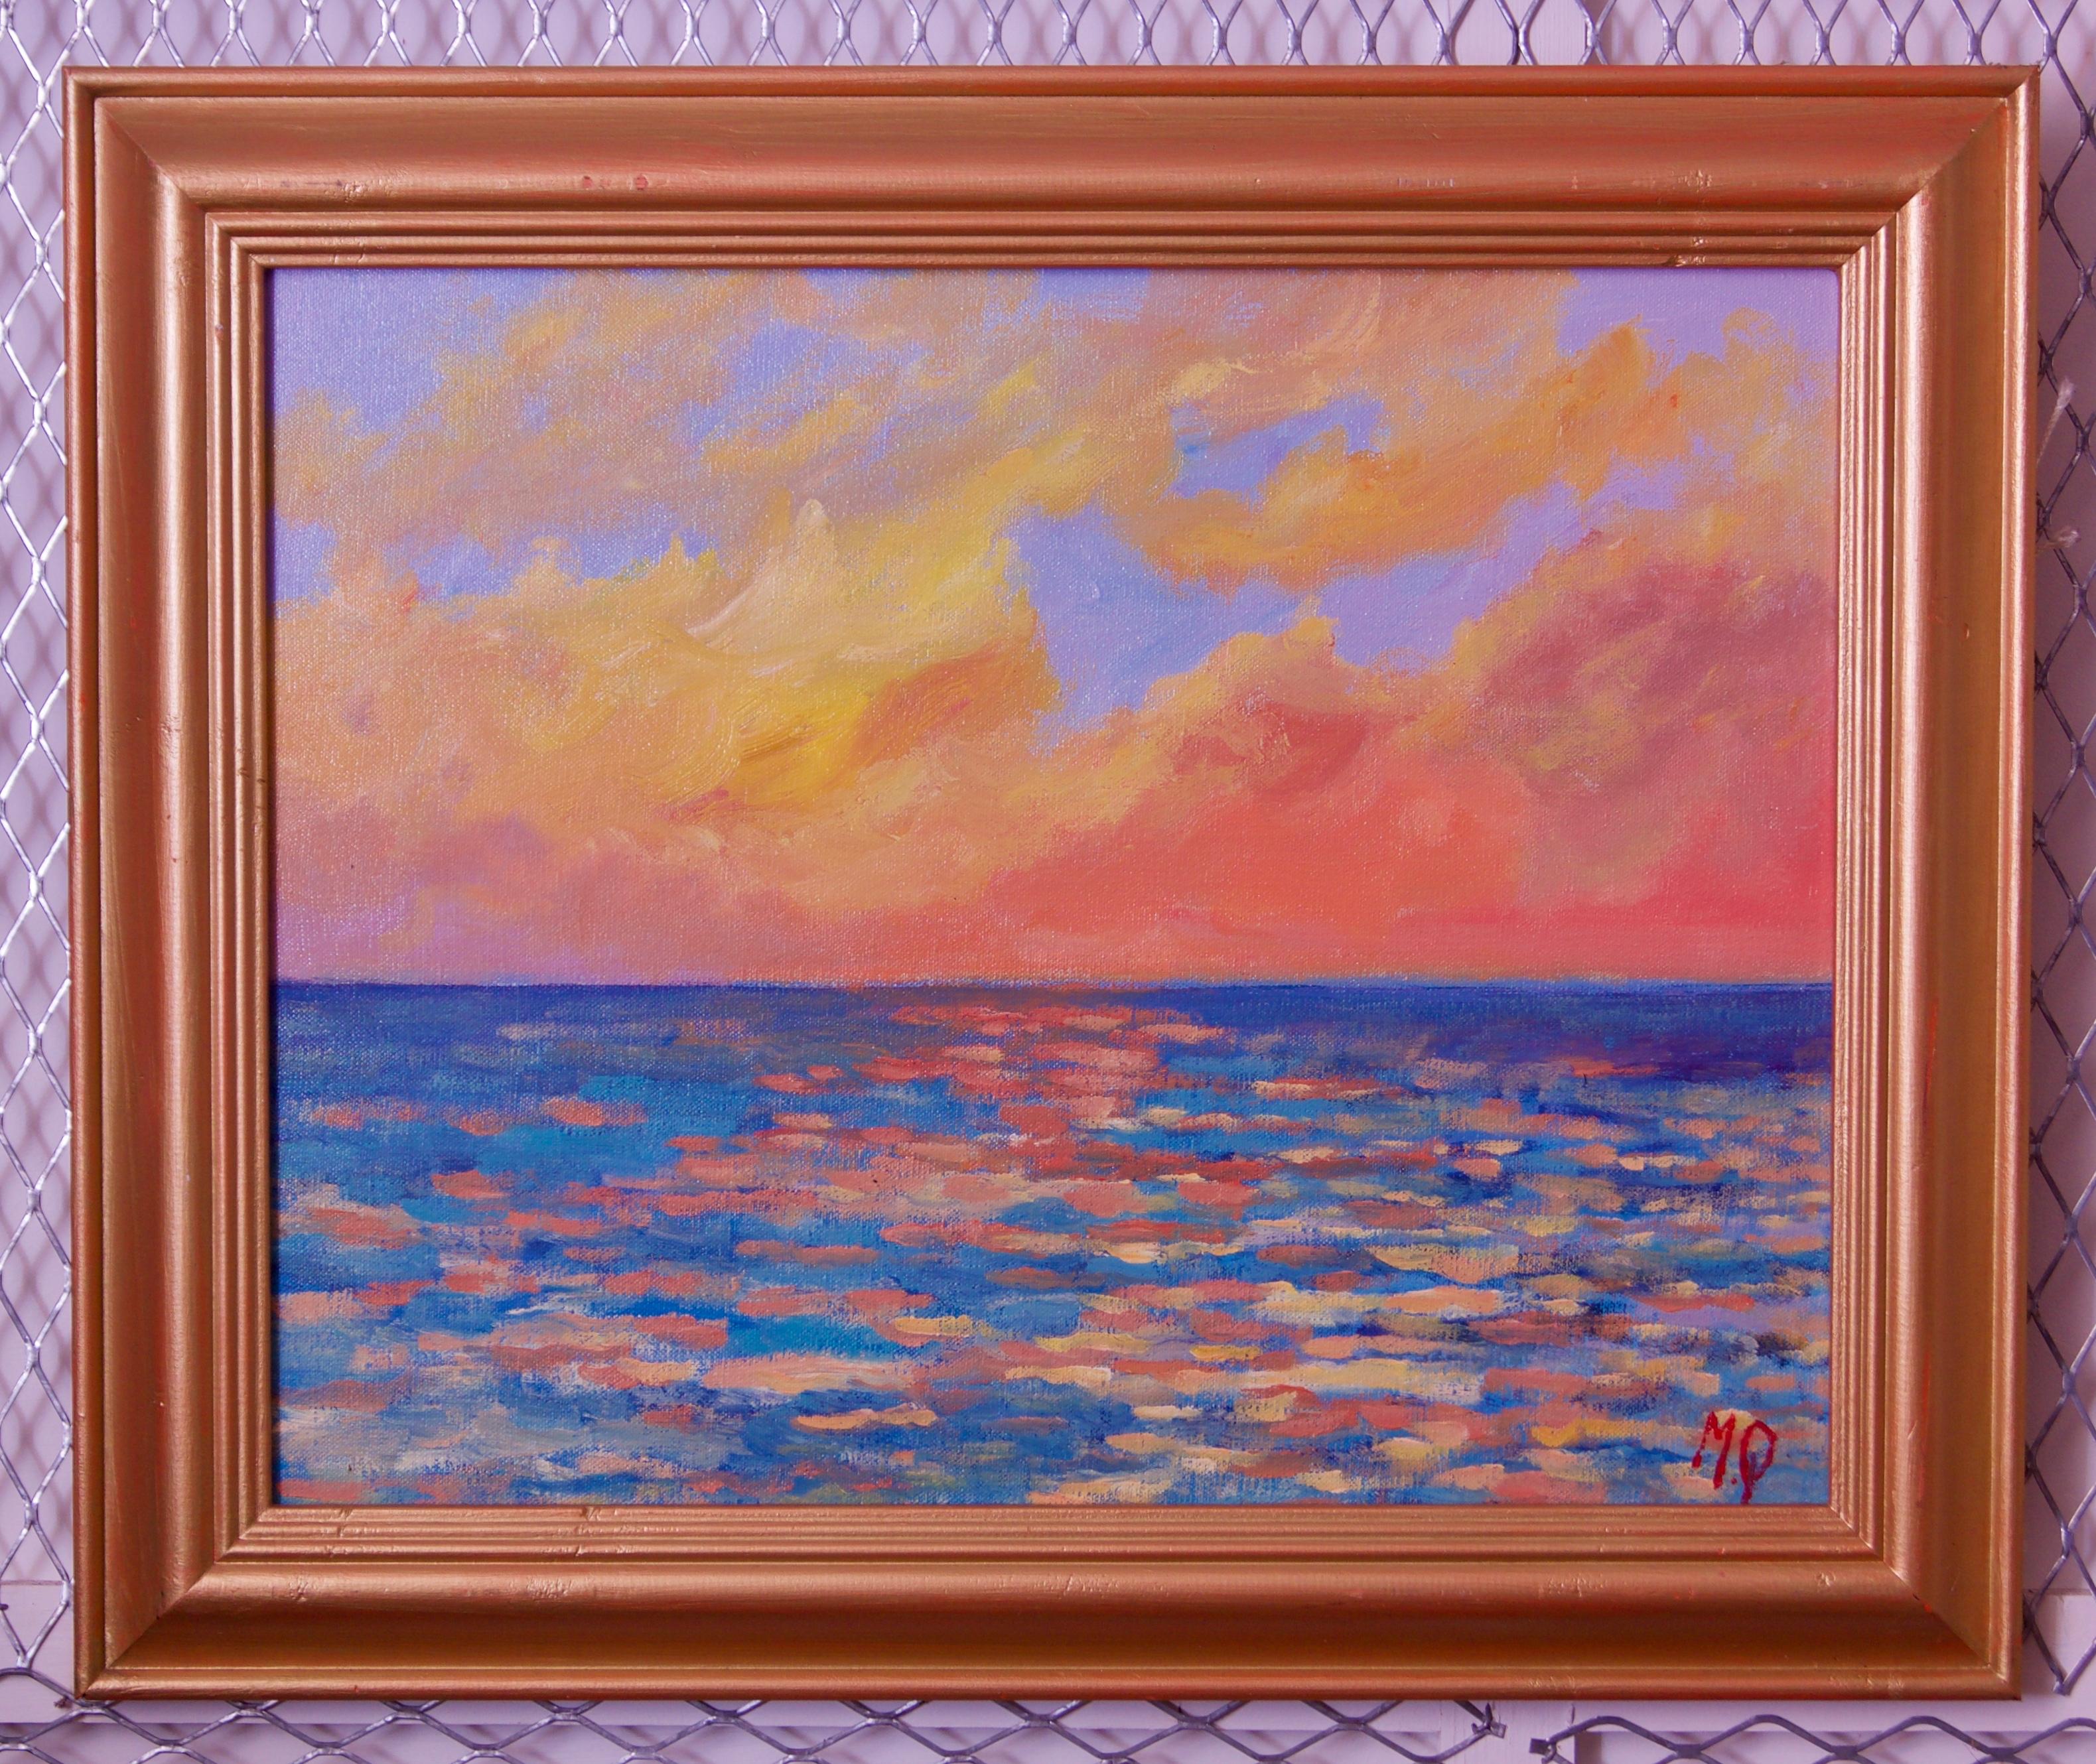 Sonnenuntergang vom Porthmeor Beach - St. Ives - Acryl von Quirke, spätes 20. Jahrhundert – Painting von Michael Quirke